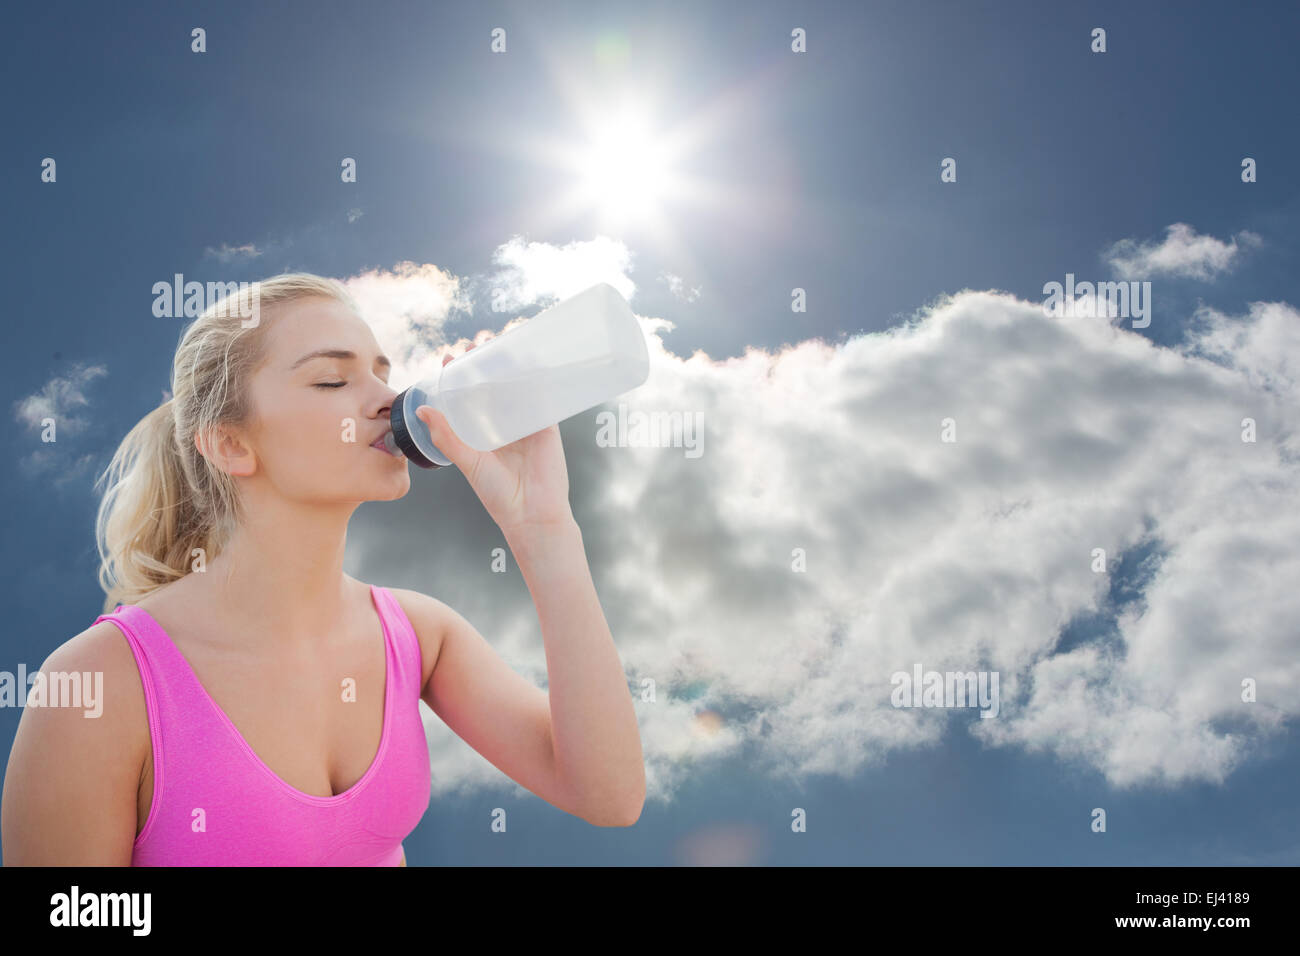 Immagine composita della bella donna sana acqua potabile Foto Stock